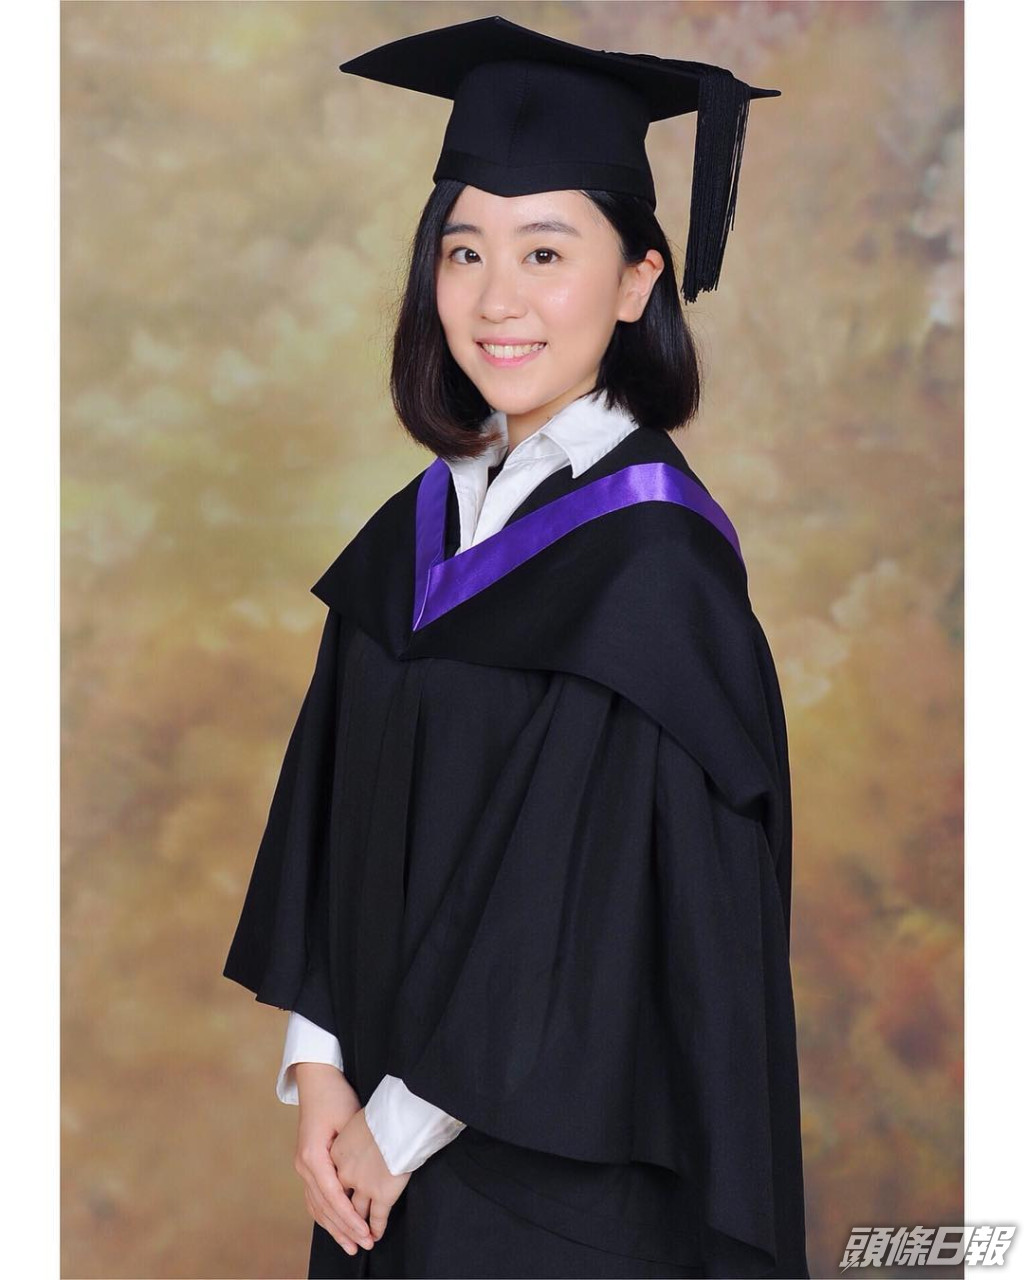 林靜莉畢業於香港樹仁大學新聞系。